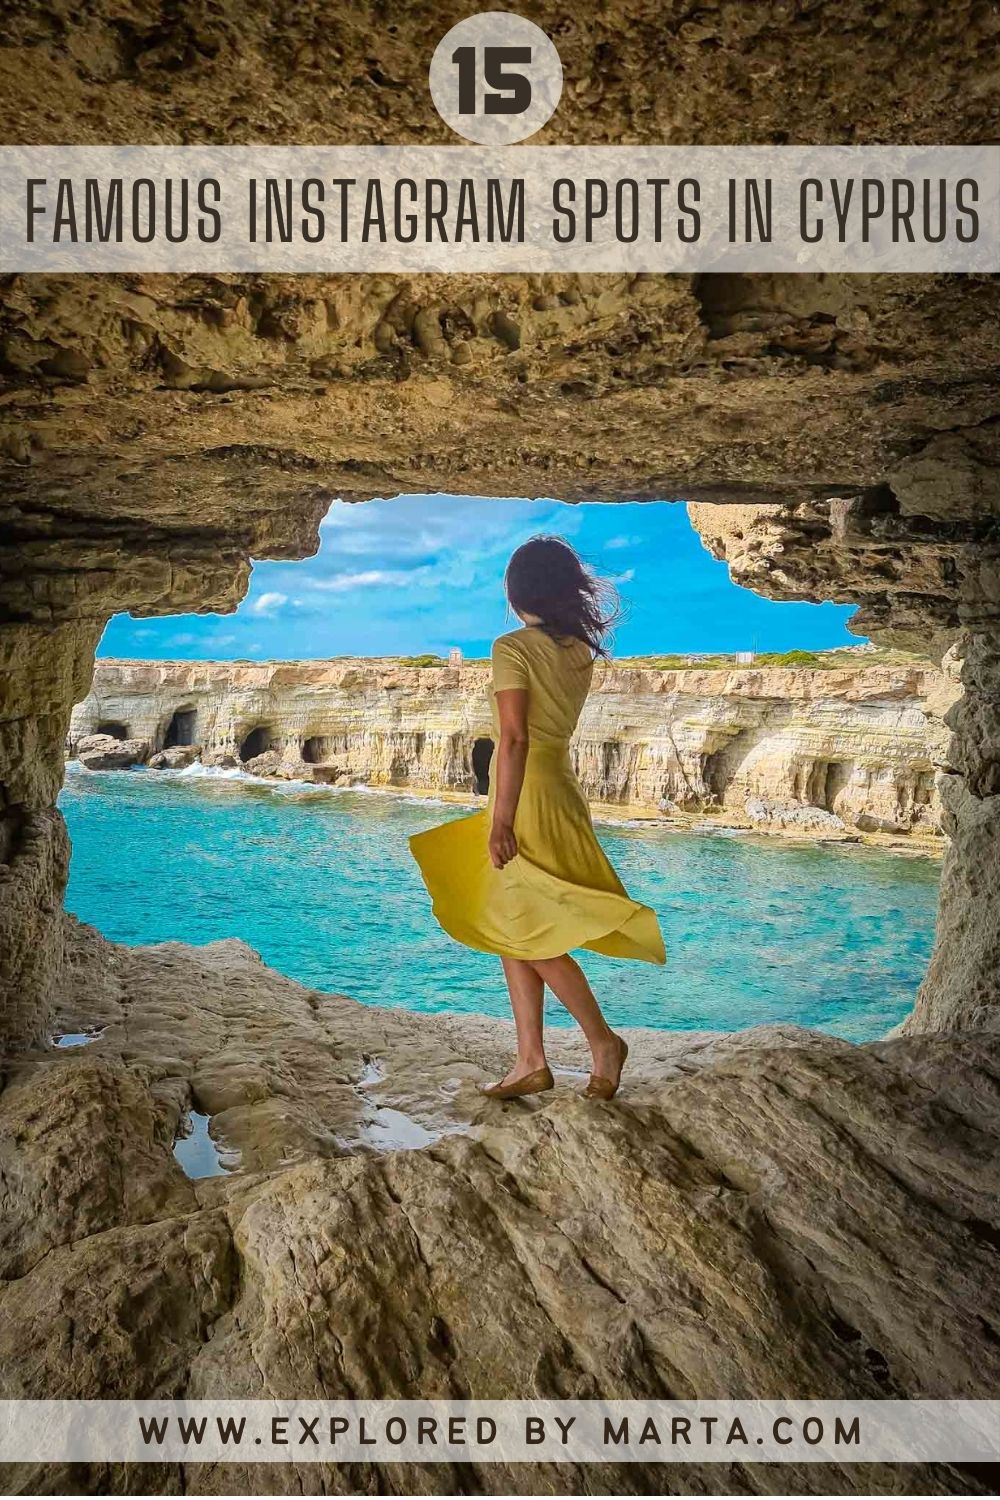 15 famous Instagram spots in Cyprus